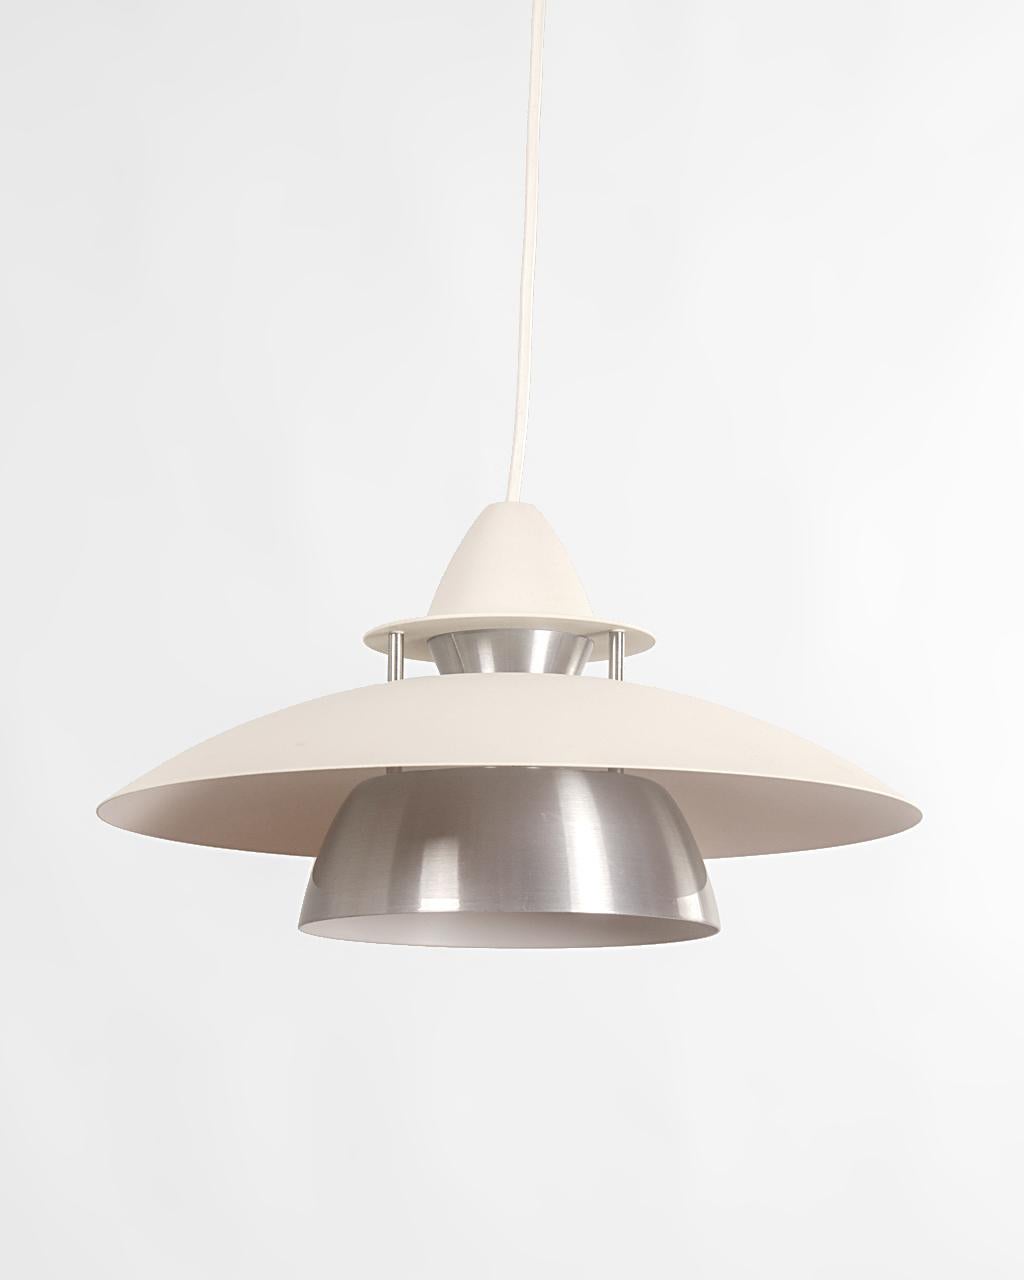 Lámpara de techo danesa de dos pantallas estilo Louis Poulsen. Diseño de mitad de siglo de marcada influencia Space Age en metal blanco y acero.